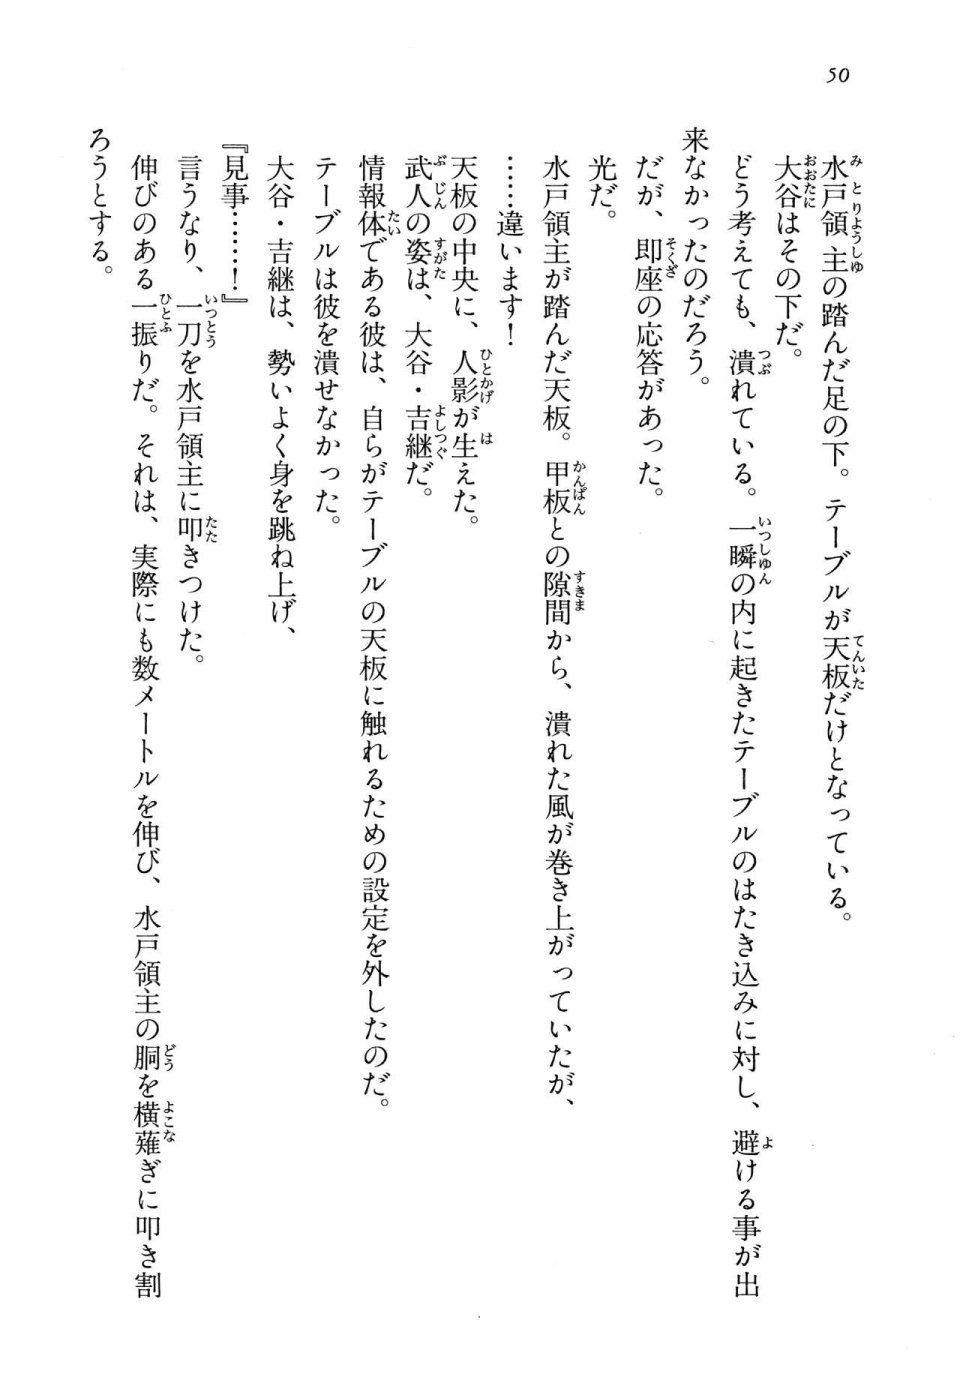 Kyoukai Senjou no Horizon LN Vol 14(6B) - Photo #50